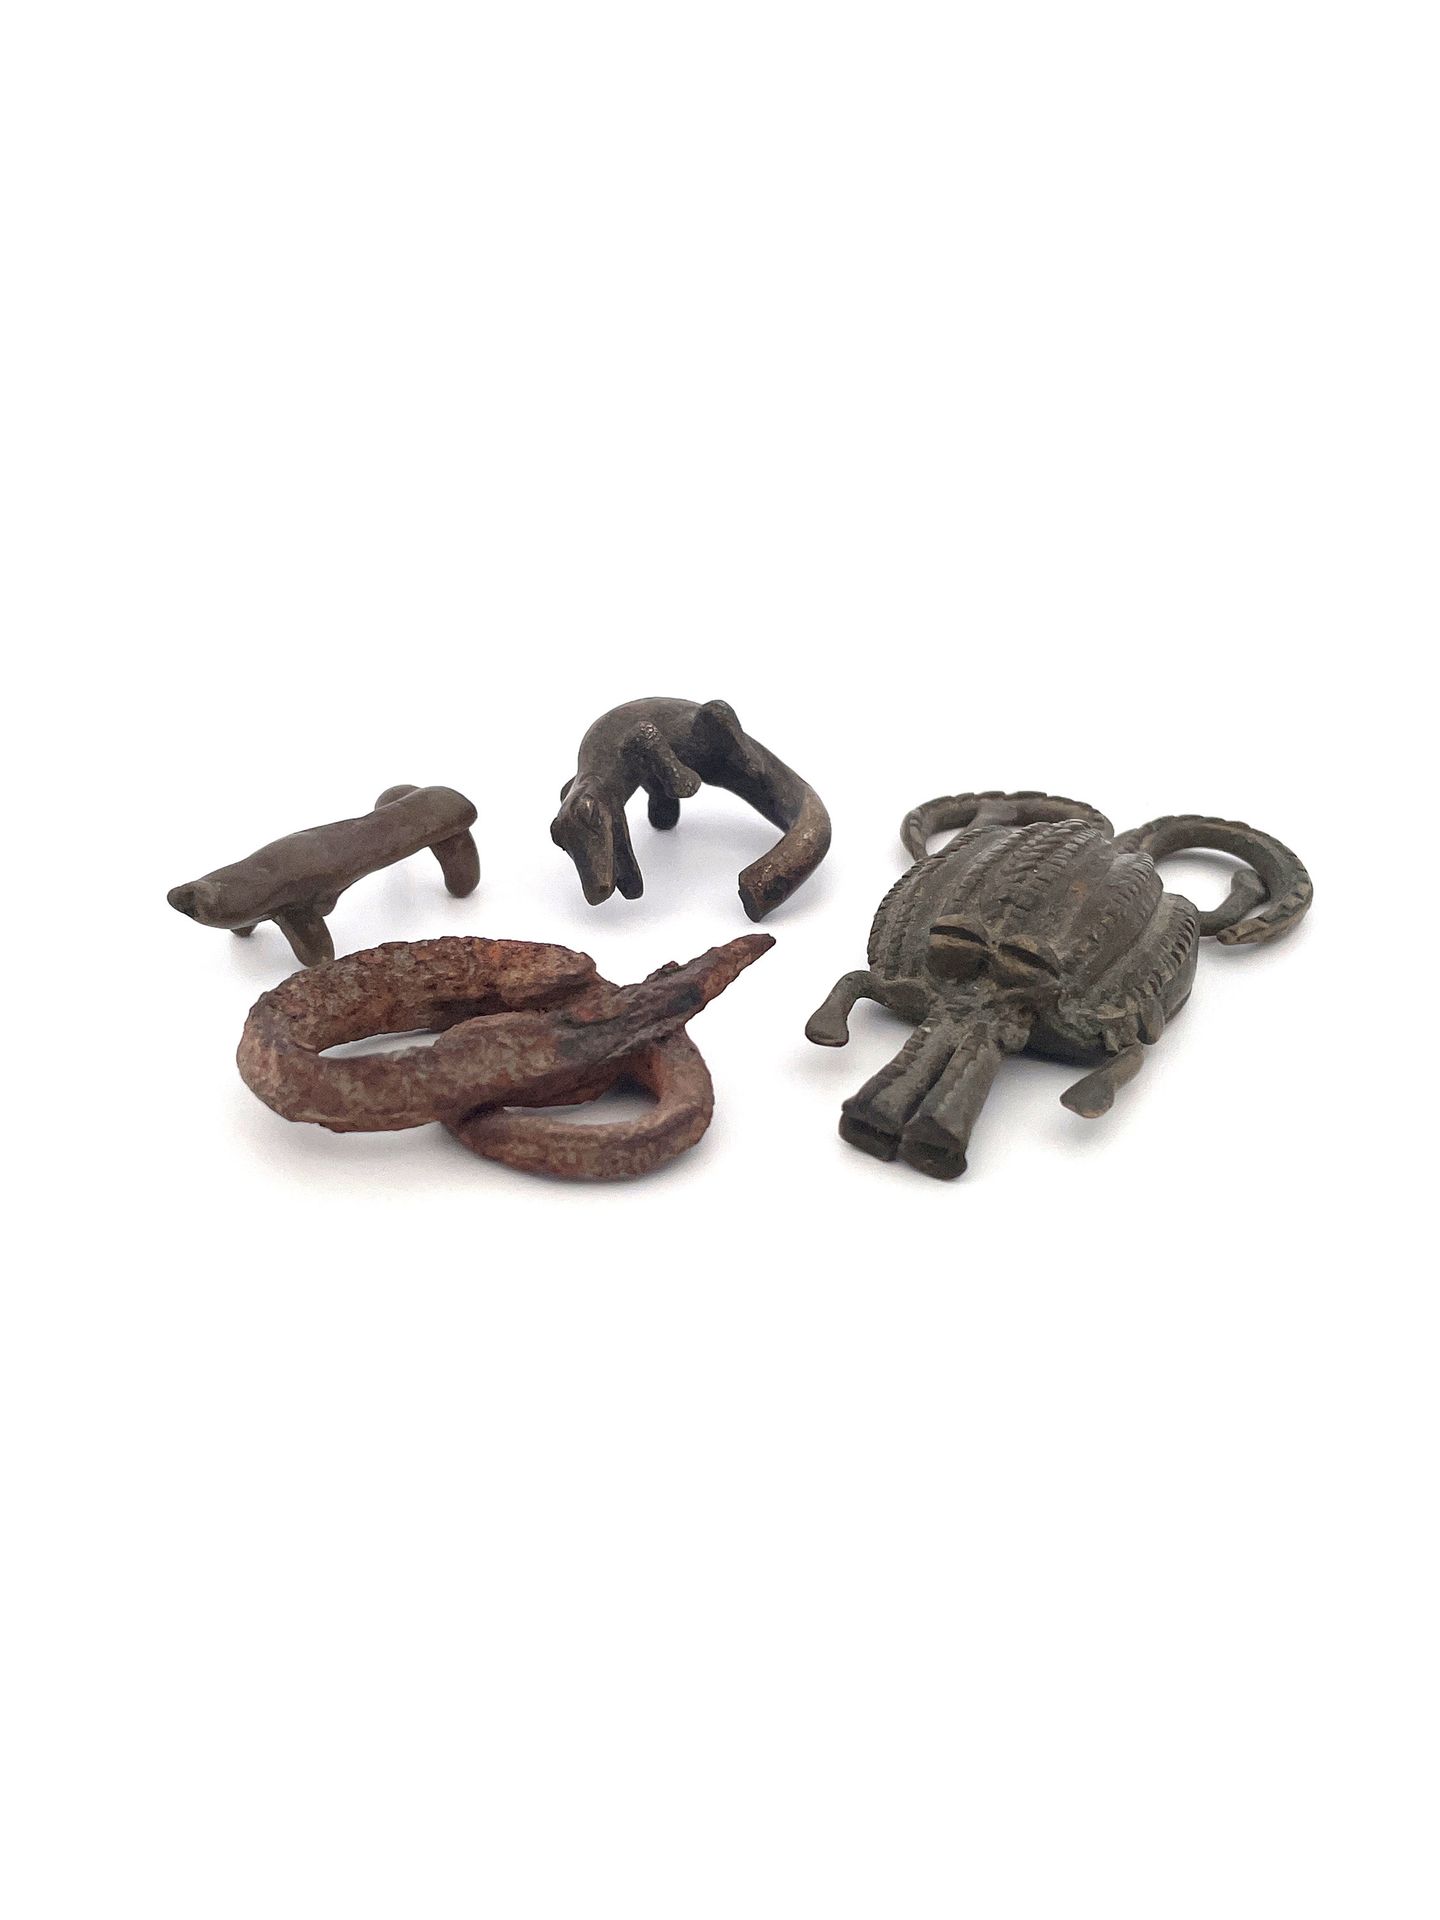 3 Miiature Bronzes and an Iron Snake 3 petits bronzes et 1 serpent de fer

Ghana&hellip;